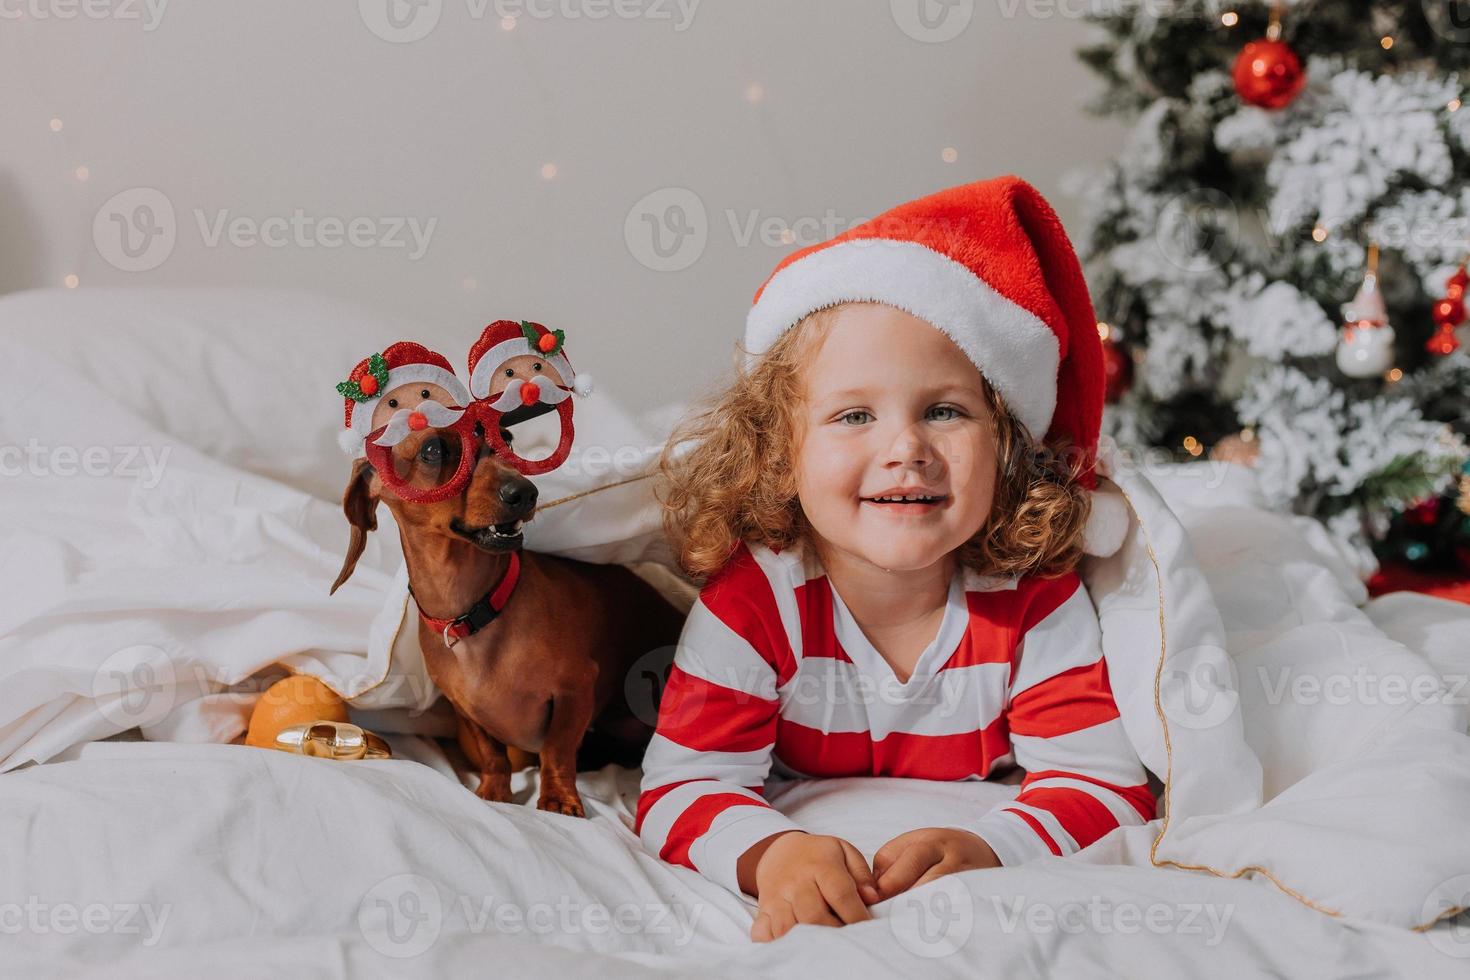 una niñita con pijama a rayas y un sombrero de santa y un perro con gafas graciosas con santa claus yacen en la cama sobre una sábana blanca contra el fondo del árbol de navidad. espacio para texto. foto de alta calidad